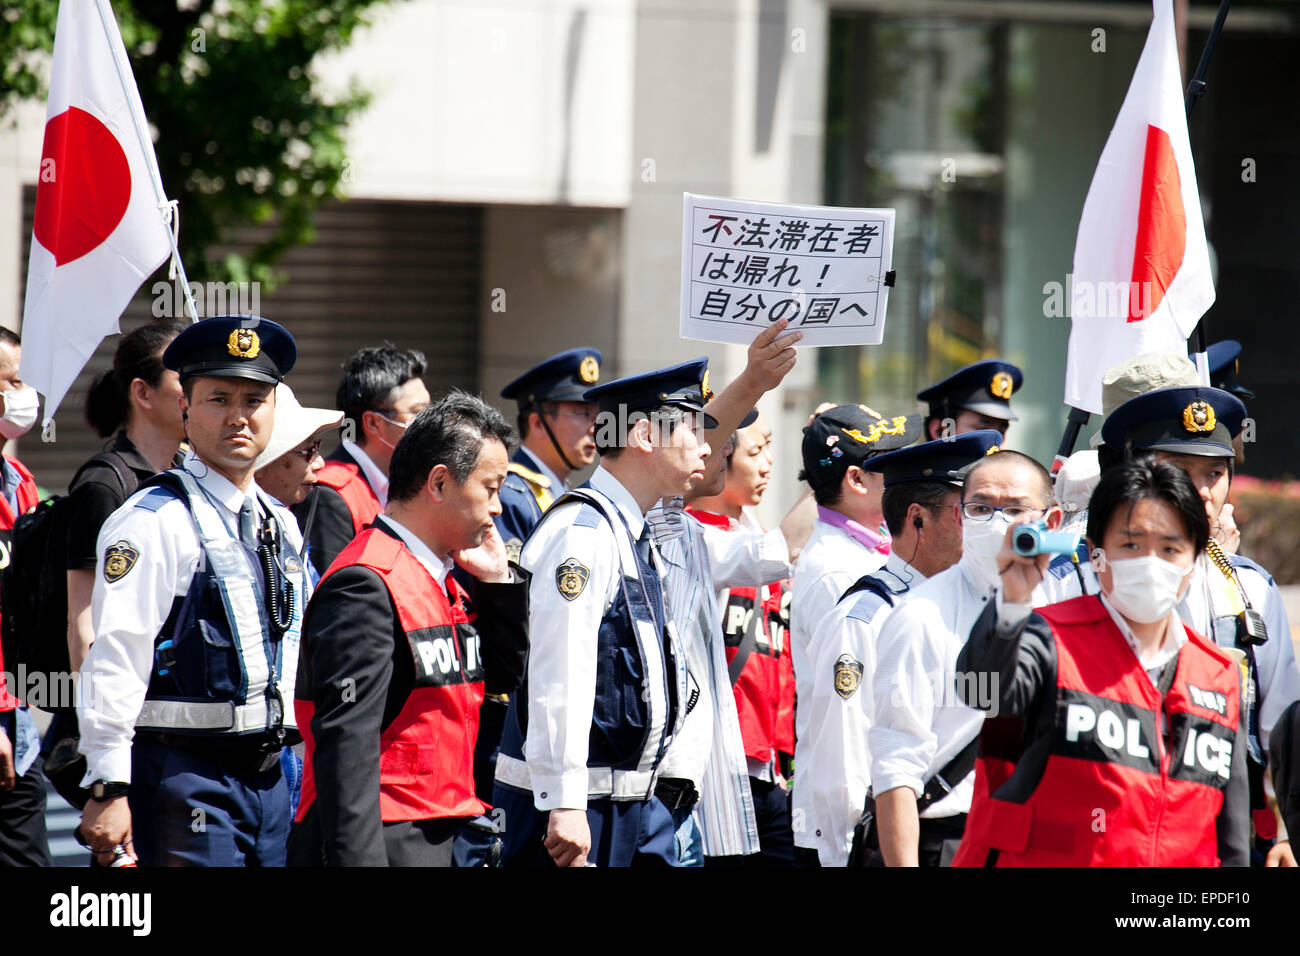 Tokyo, Japon. 17 mai, 2015. Stand de la Police de protection pour les membres de l'OSBL Hôjin Tôkyô Gaikokujin Hanzai Tsuiho Annuler (le Mouvement pour l'élimination des crimes commis par des étrangers) dans le quartier d'Akihabara, le 17 mai 2015, Tokyo, Japon. Plus d'une centaine d'anti-racistes ont protesté contre un rassemblement organisé par l'aile droite NPO tenue le 17 mai autour de la rue d'Akihabara. Credit : AFLO Co.,Ltd/Alamy Live News Banque D'Images